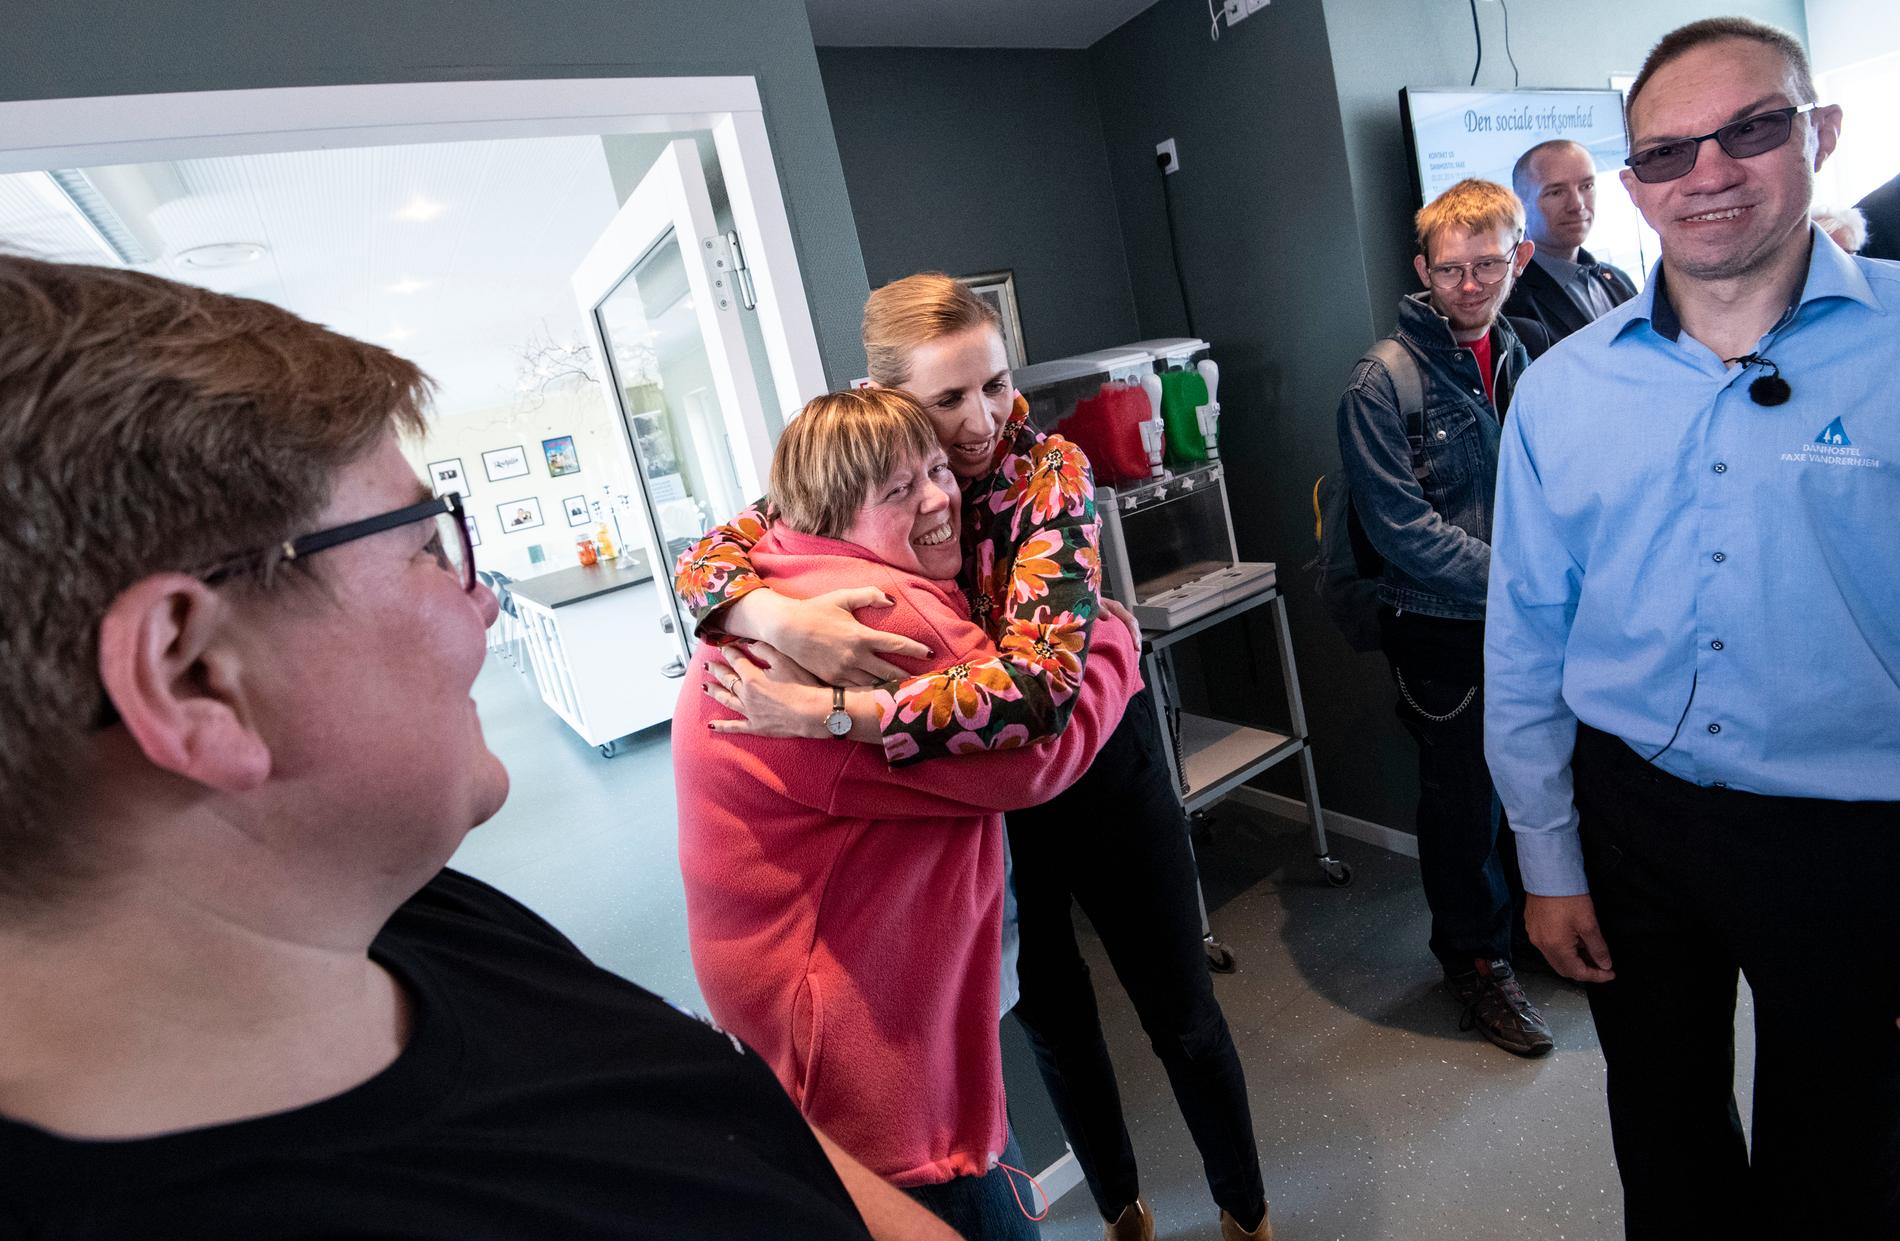 Många vill få en kram av Mette Frederiksen, socialdemokratisk partiledare i Danmark, när hon besöker vandrarhemmet i Faxe, som har profilerat sig som en arbetsplats för arbetshandikappade.